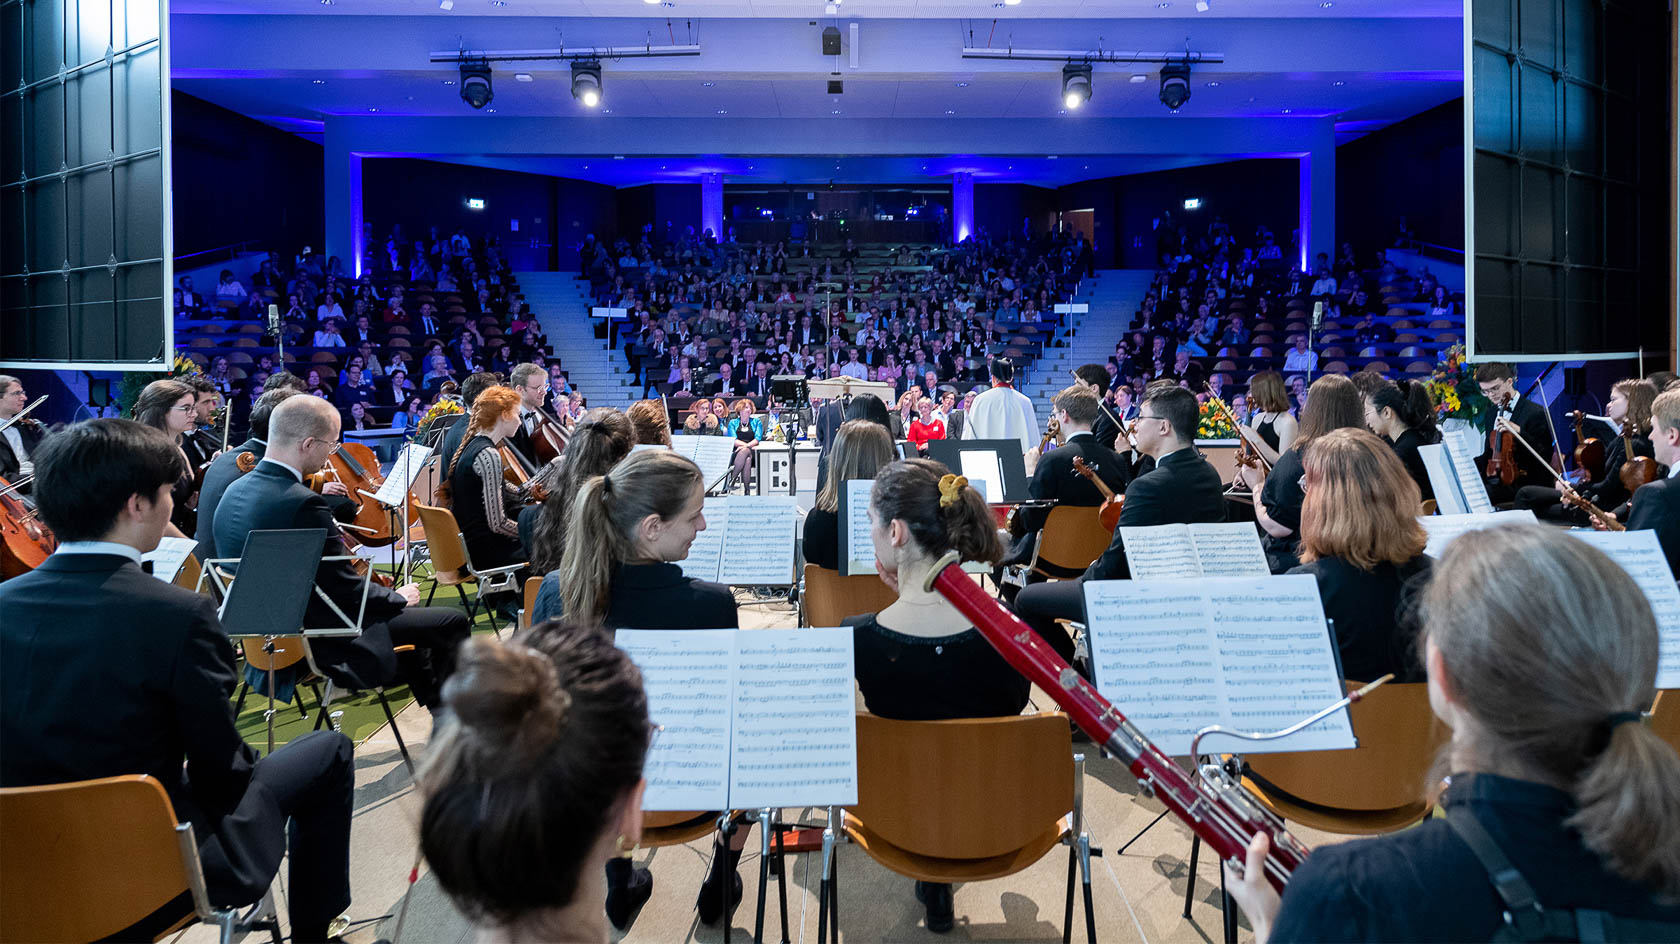 Schulterblick über die Musiker:innen des Akademischen Orchesters Zürich, das den Anlass musikalisch begleitete.